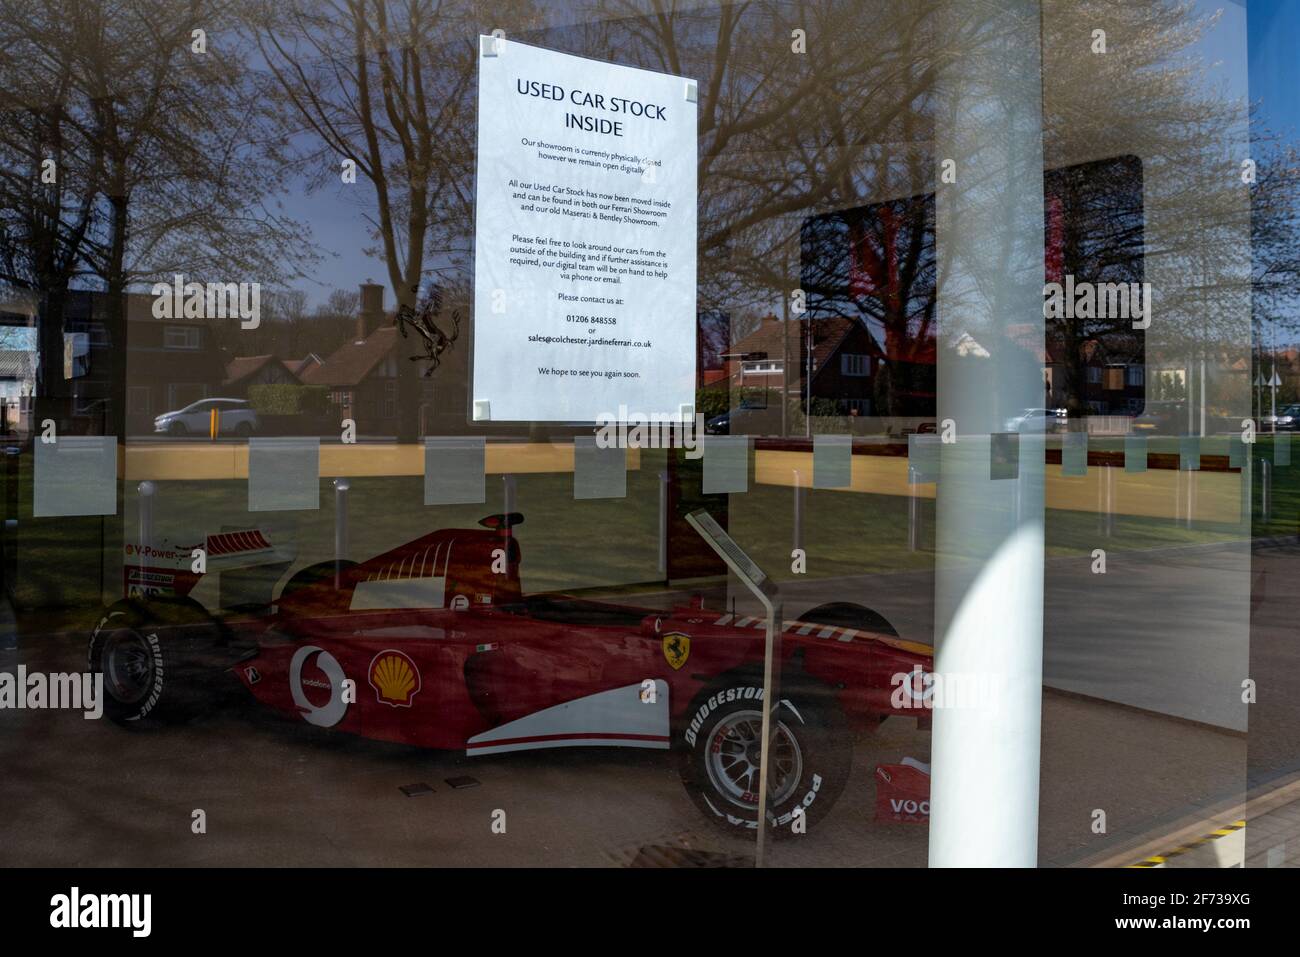 Ferrari F1 Grand Prix racing car all'interno di una concessionaria a Colchester, Essex, Regno Unito, con avviso interno scorte di auto usate. Umorismo. Giustapposizione del segno Foto Stock